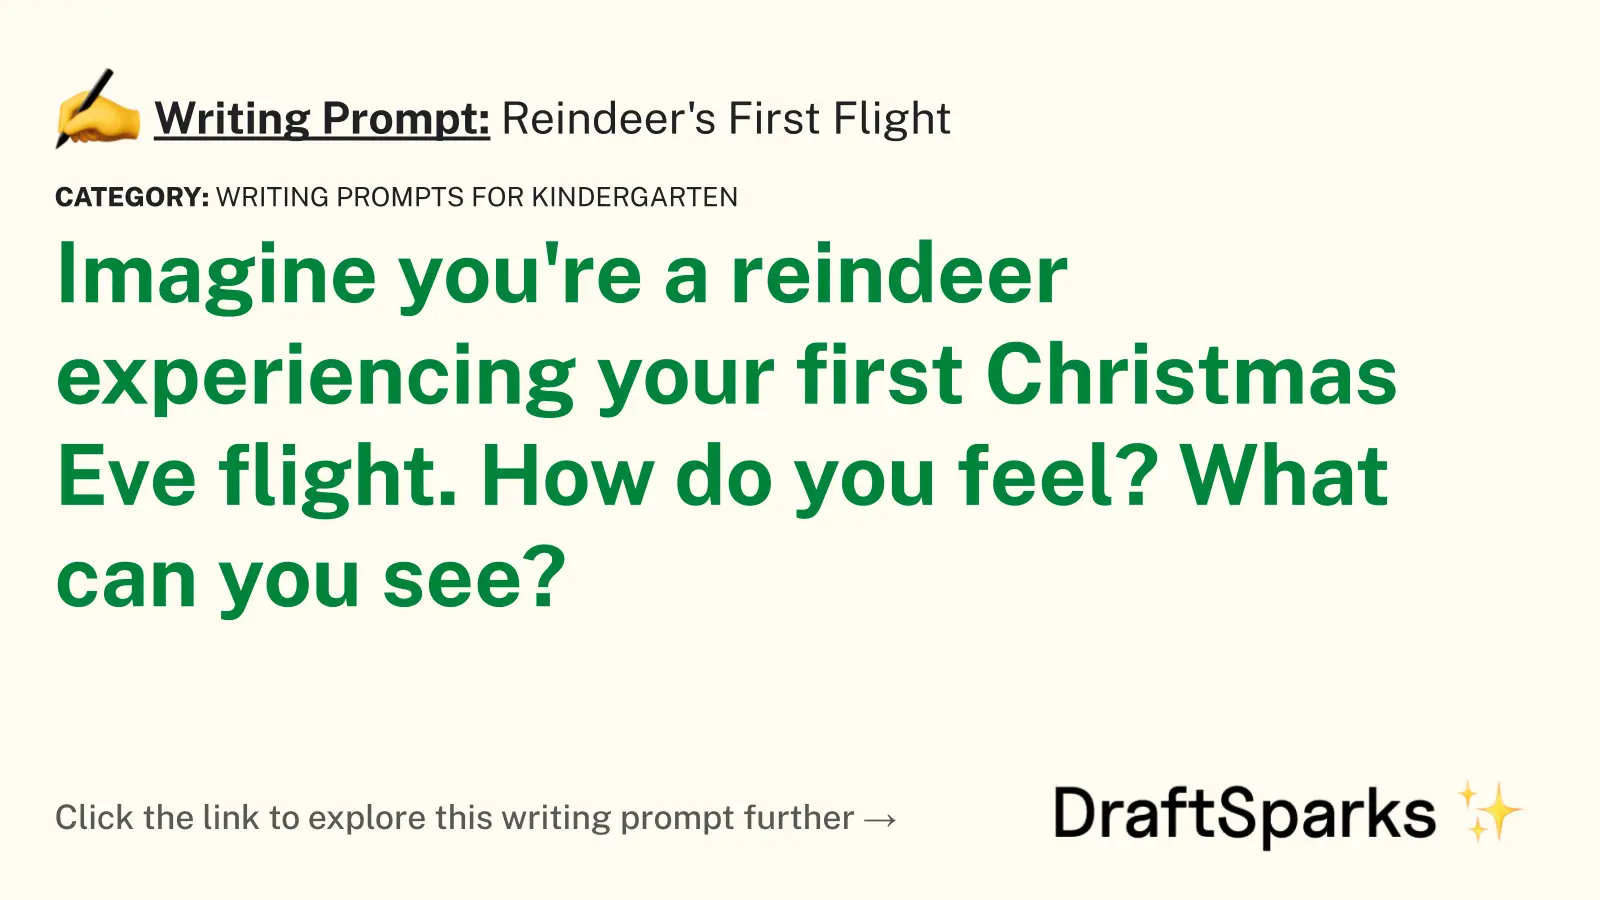 Reindeer’s First Flight